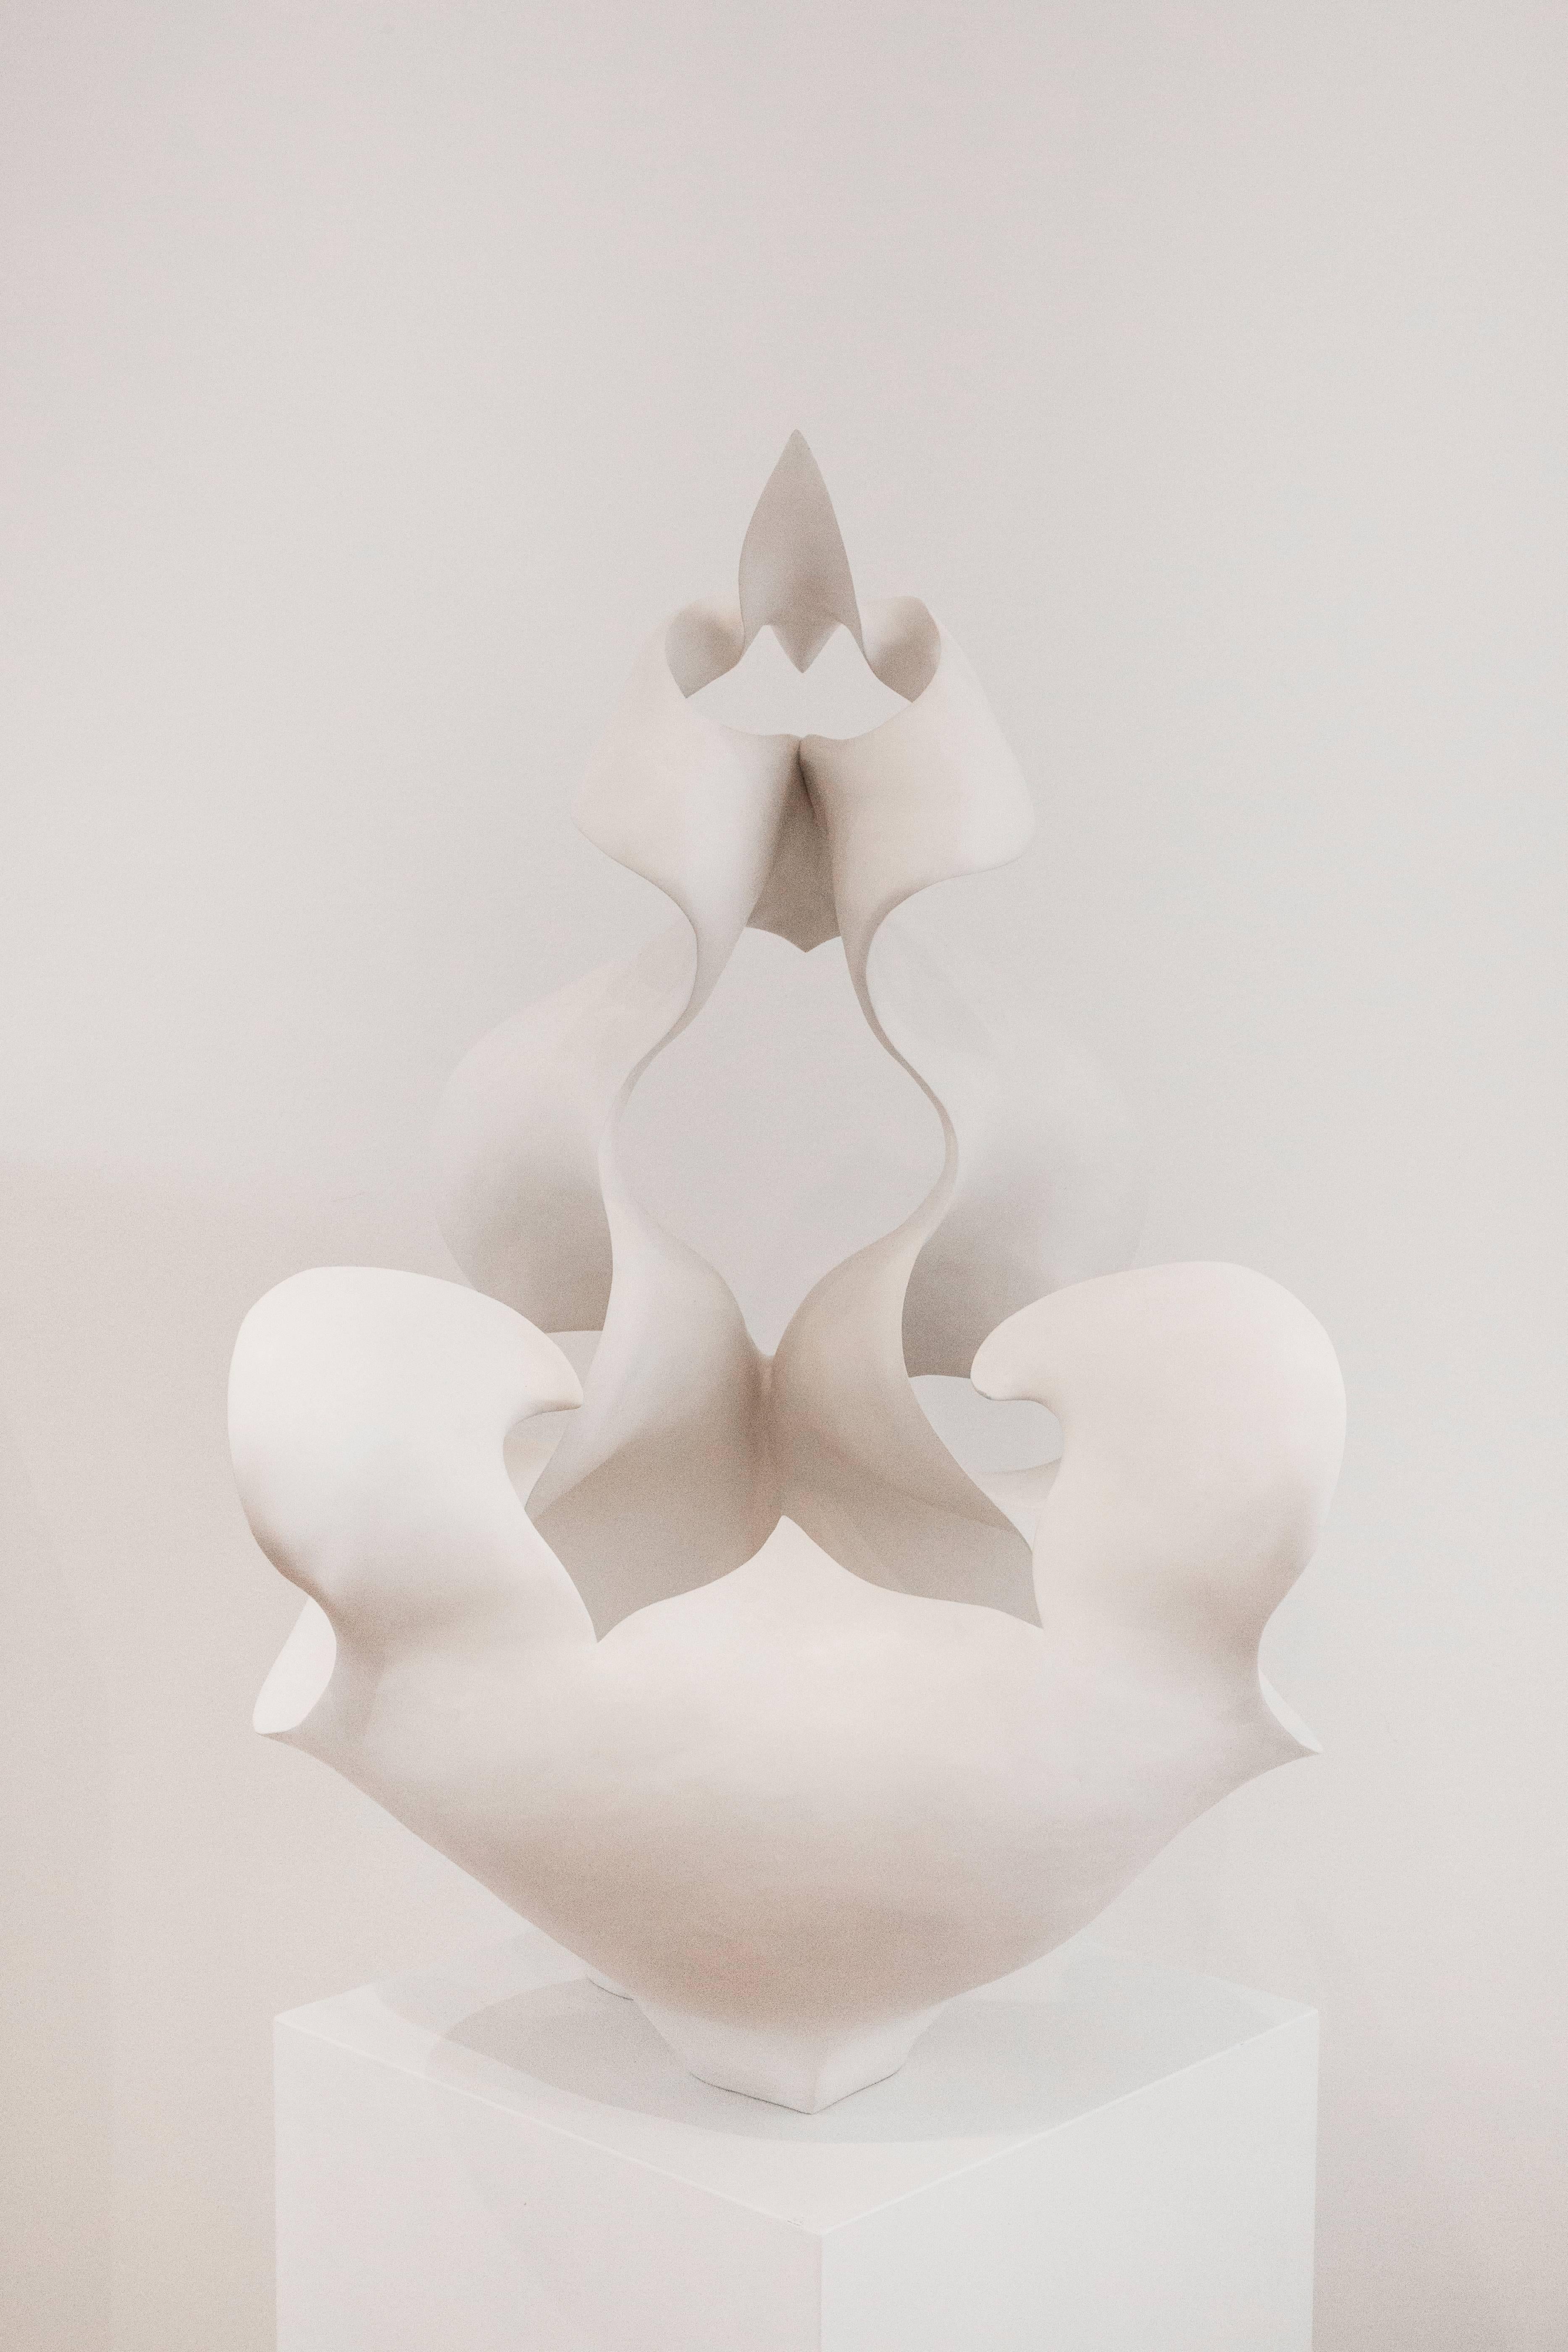 Dendrobium Tobaense - Sculpture by Astrid Dahl